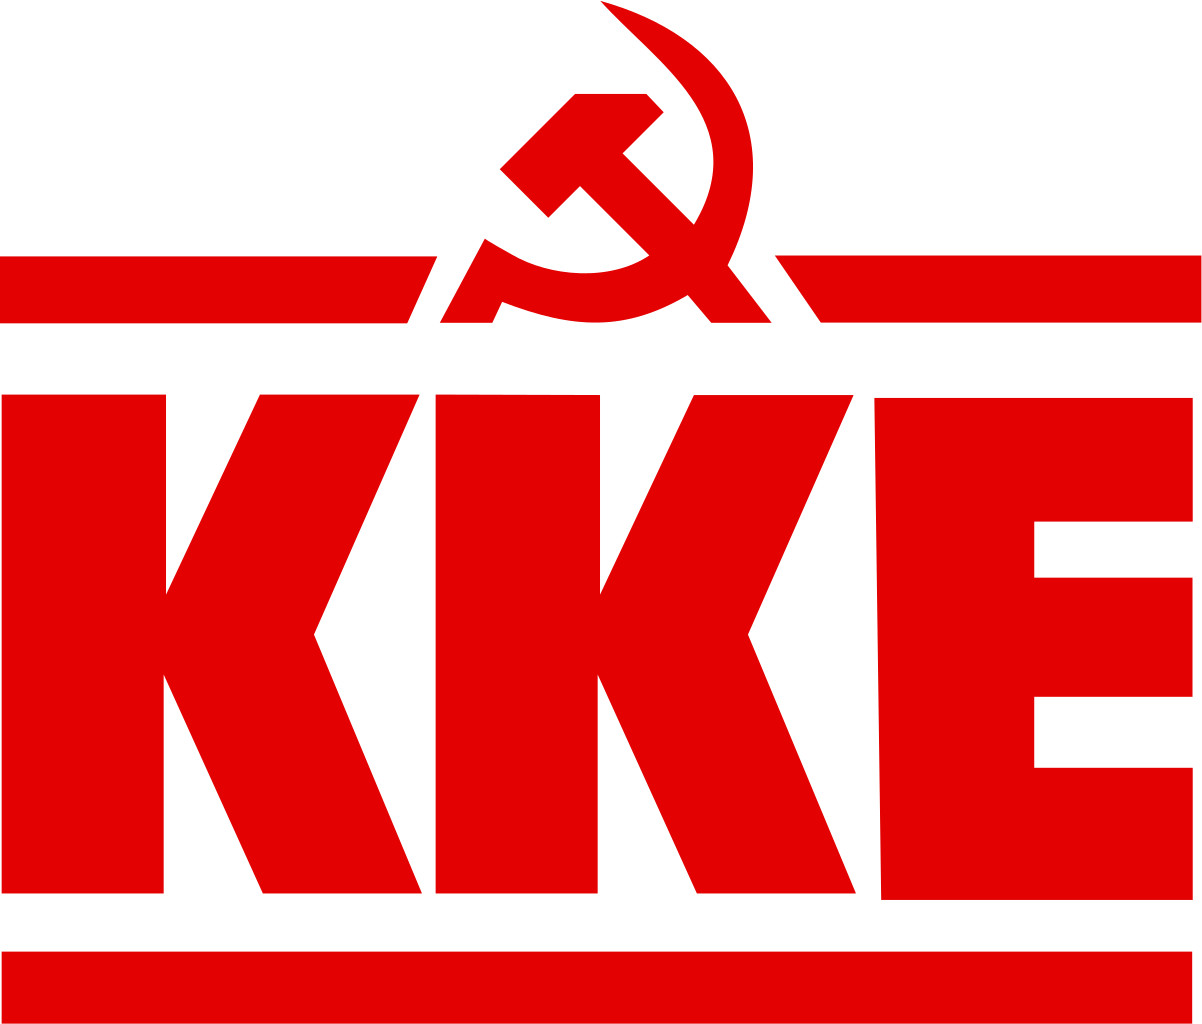 希臘共產黨